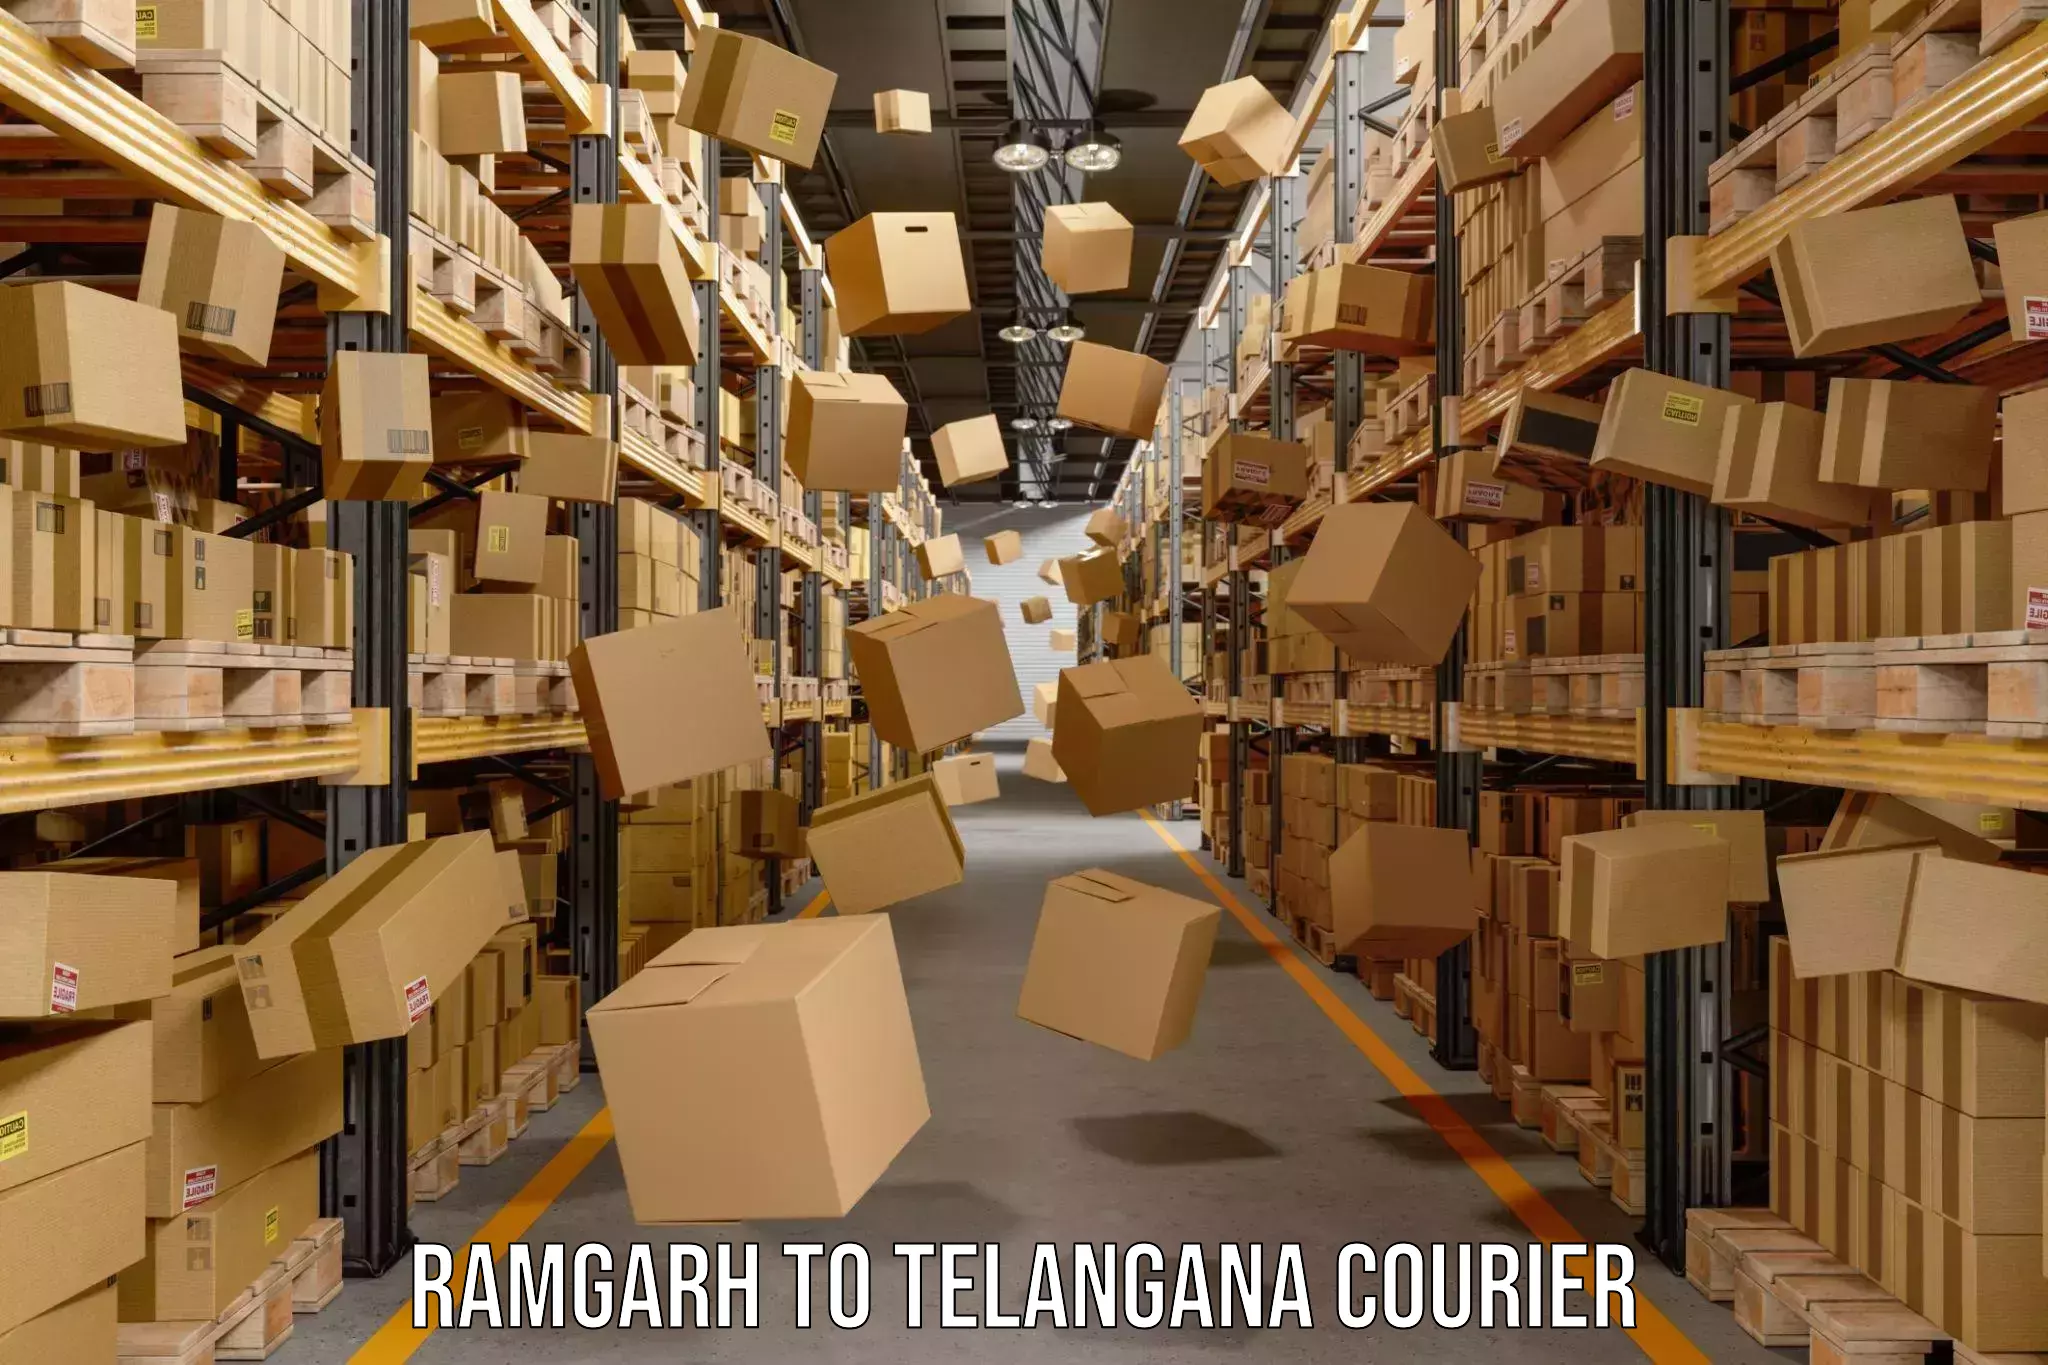 Express package handling Ramgarh to Jagtial